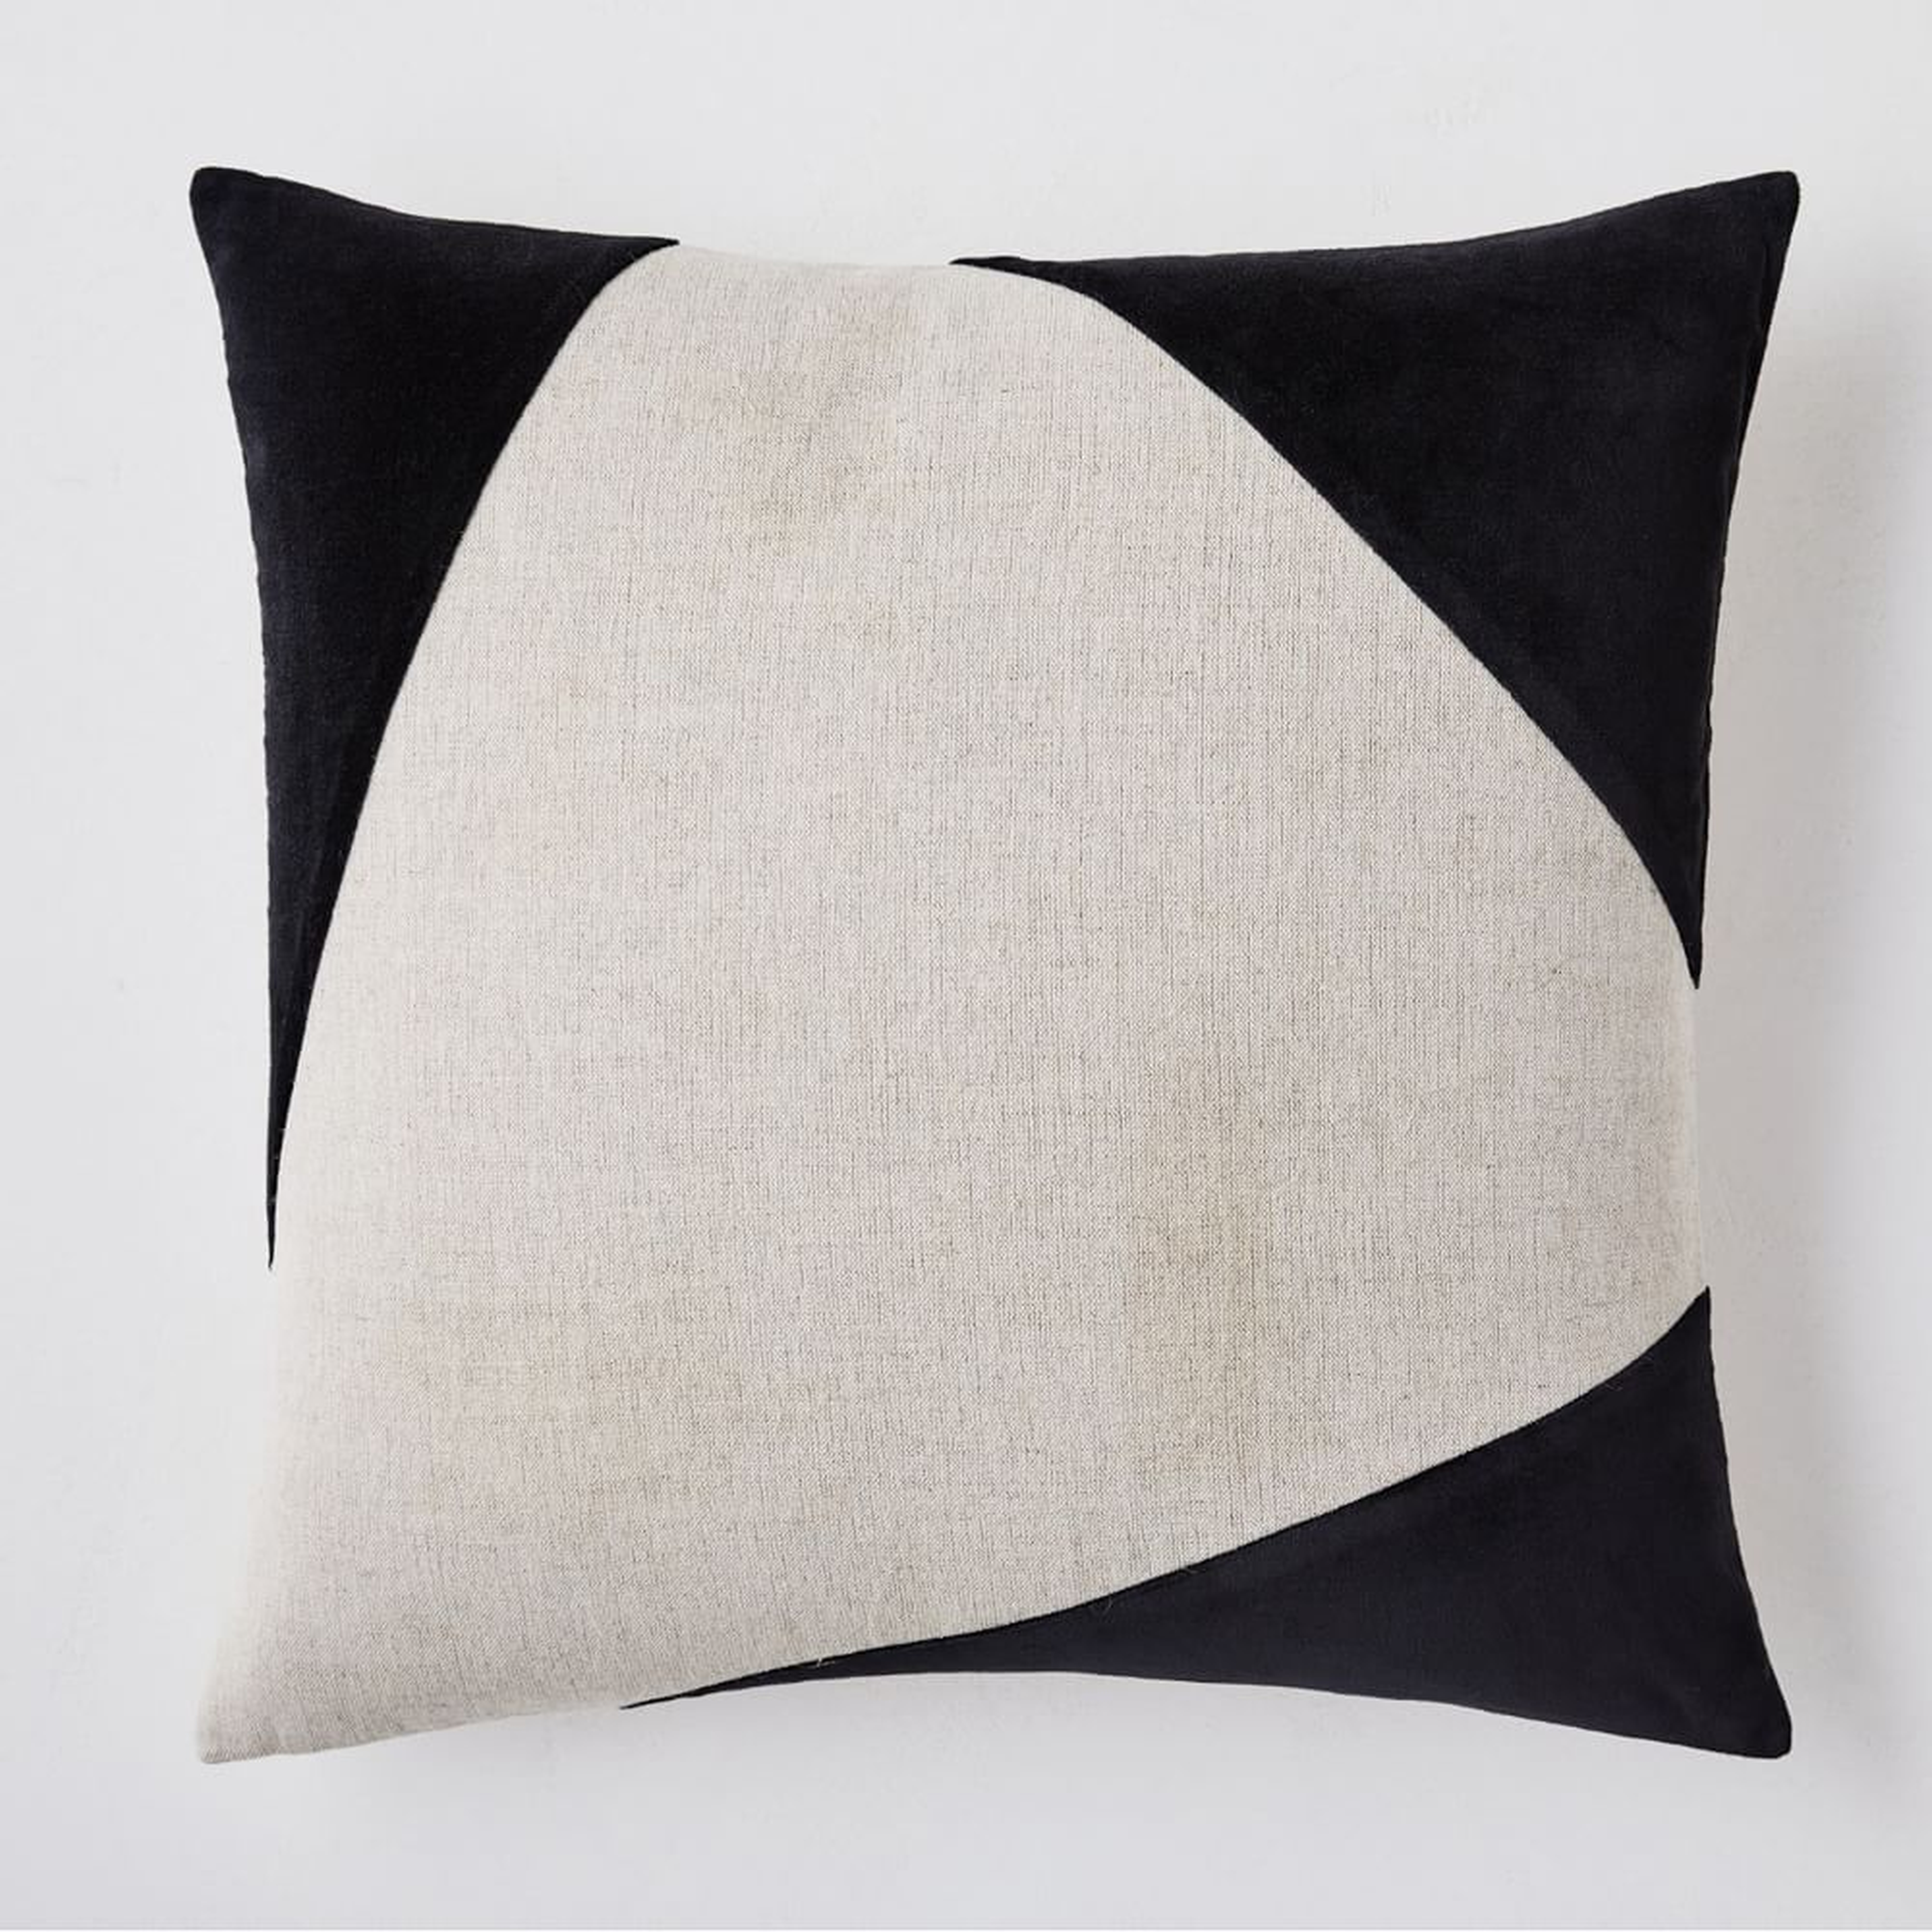 Cotton Linen + Velvet Corners Pillow Cover, 20"x20", Black - West Elm